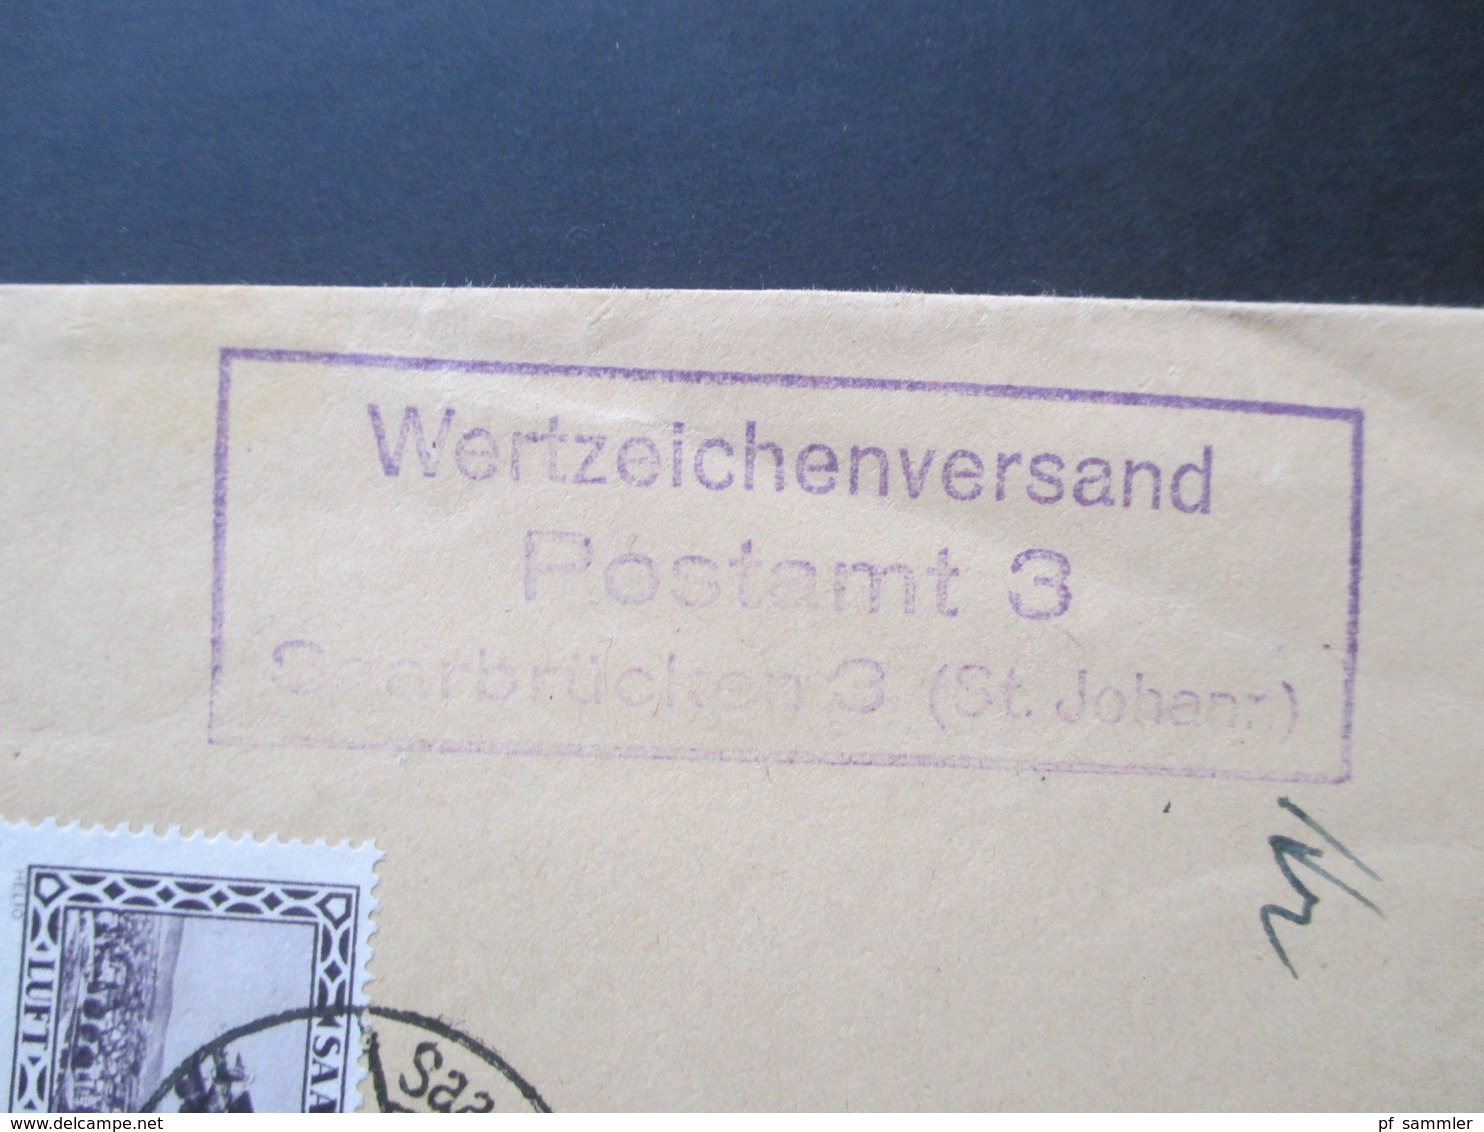 Saargebiet 1930 Flugpostmarken Nr. 126 / 127 MiF Einschreiben Saarbrücken 3 (St. Johann) Nach München Wertzeichenversand - Briefe U. Dokumente